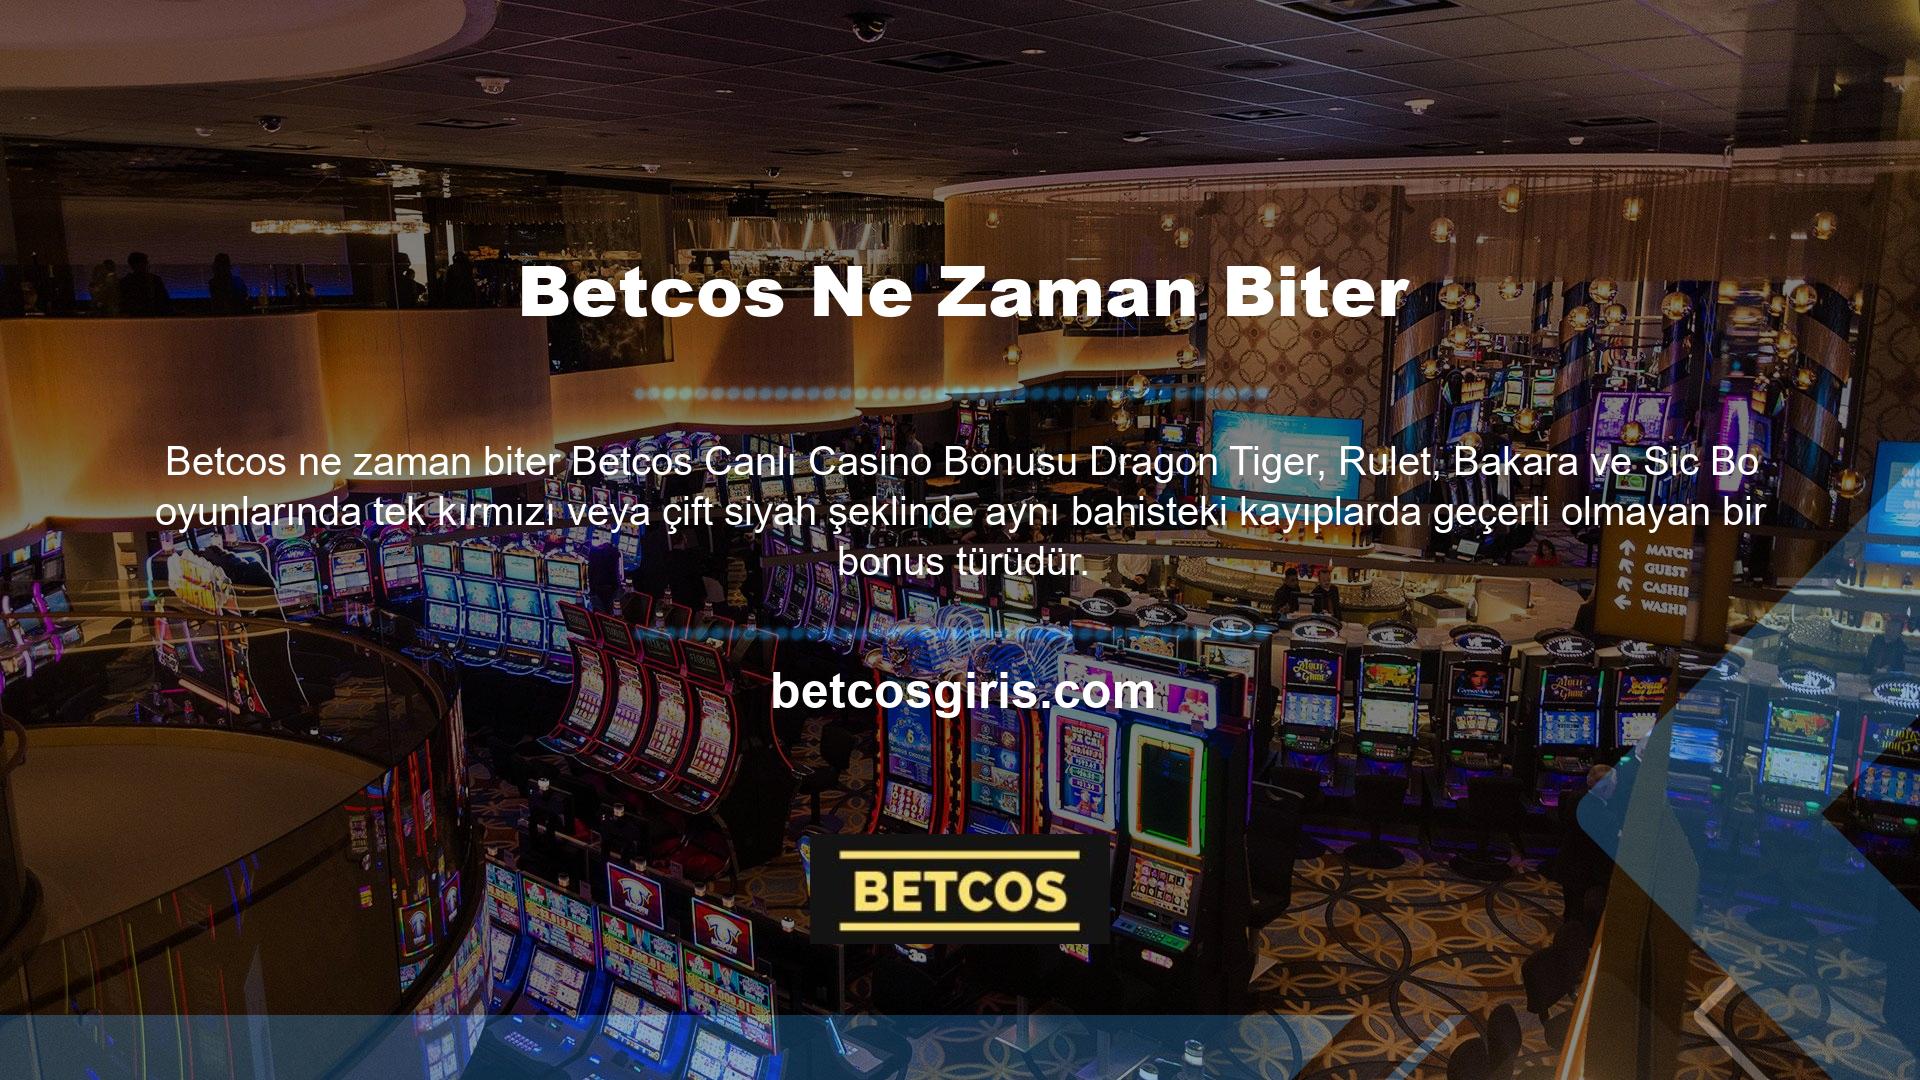 Tüm bonuslar için geçerli olan yukarıdaki bonus hüküm ve koşullarının tümü, Betcos canlı casino bonusları için de geçerlidir